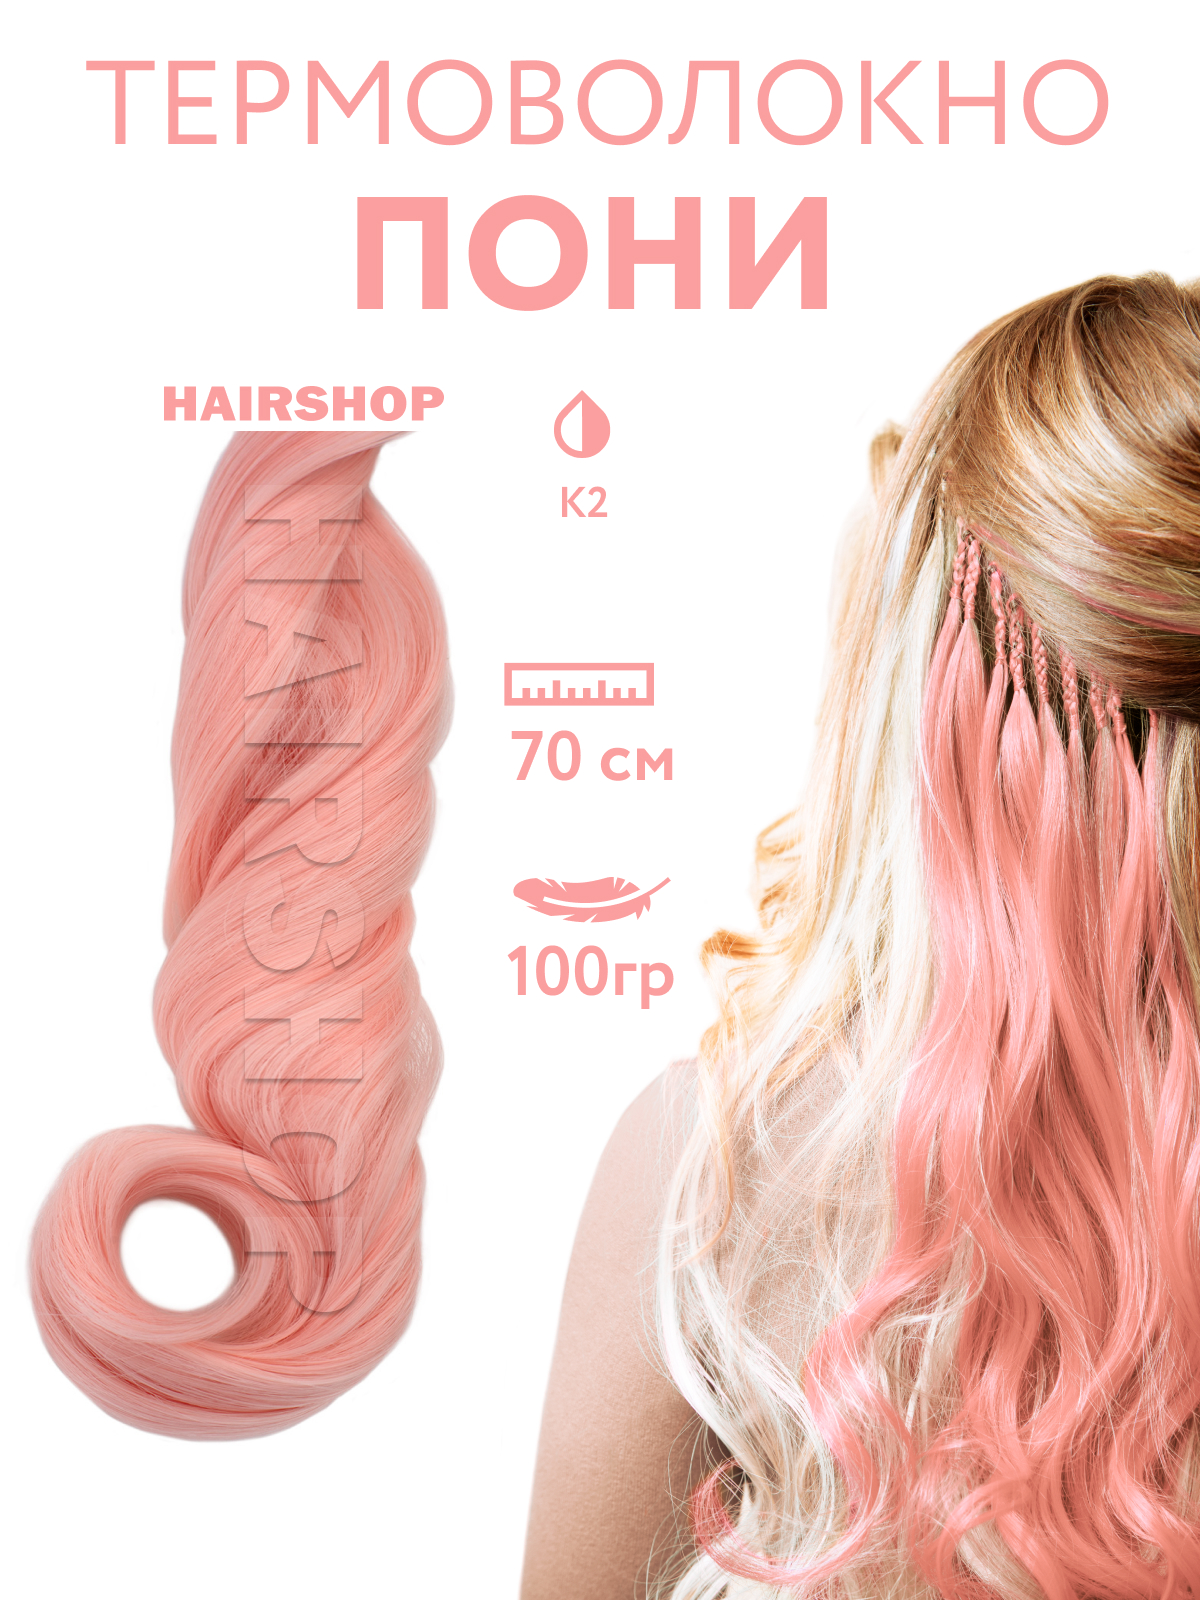 Канекалон HAIRSHOP Пони HairUp для точечного афронаращивания К2 Розово-коралловый 1,4м канекалон hairshop пони hairup для точечного афронаращивания 135s красно рыжий 1 4м